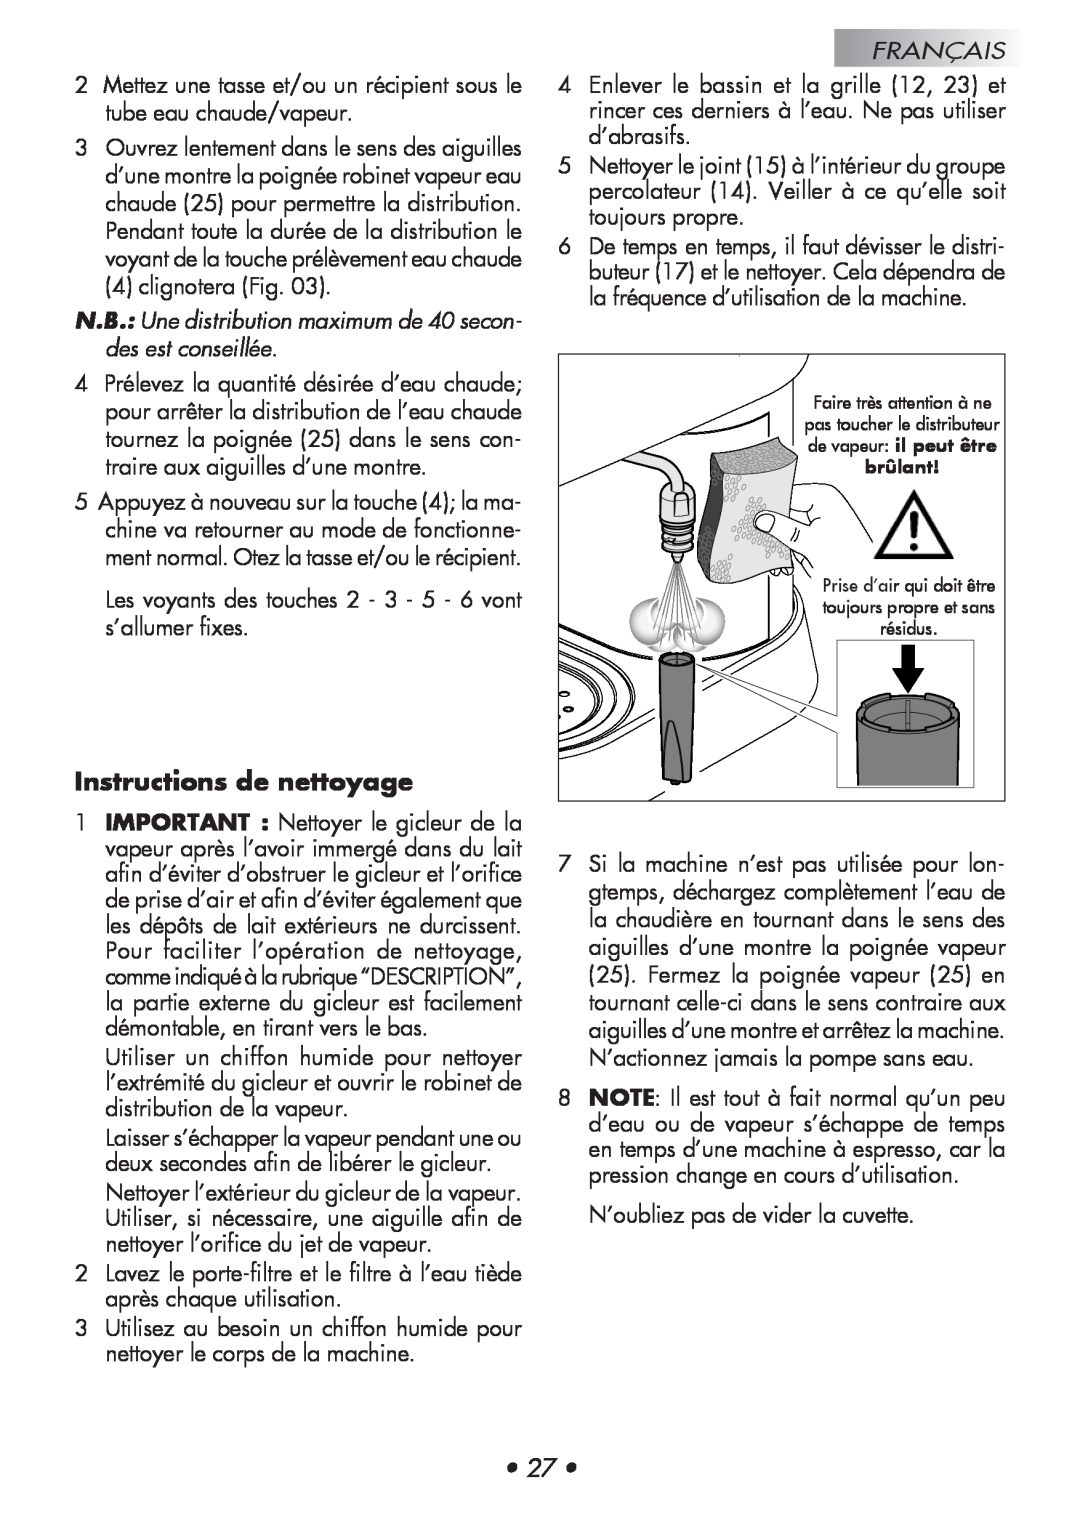 Gaggia 14101-8002 manual Instructions de nettoyage, N.B. Une distribution maximum de 40 secon- des est conseillée, Français 